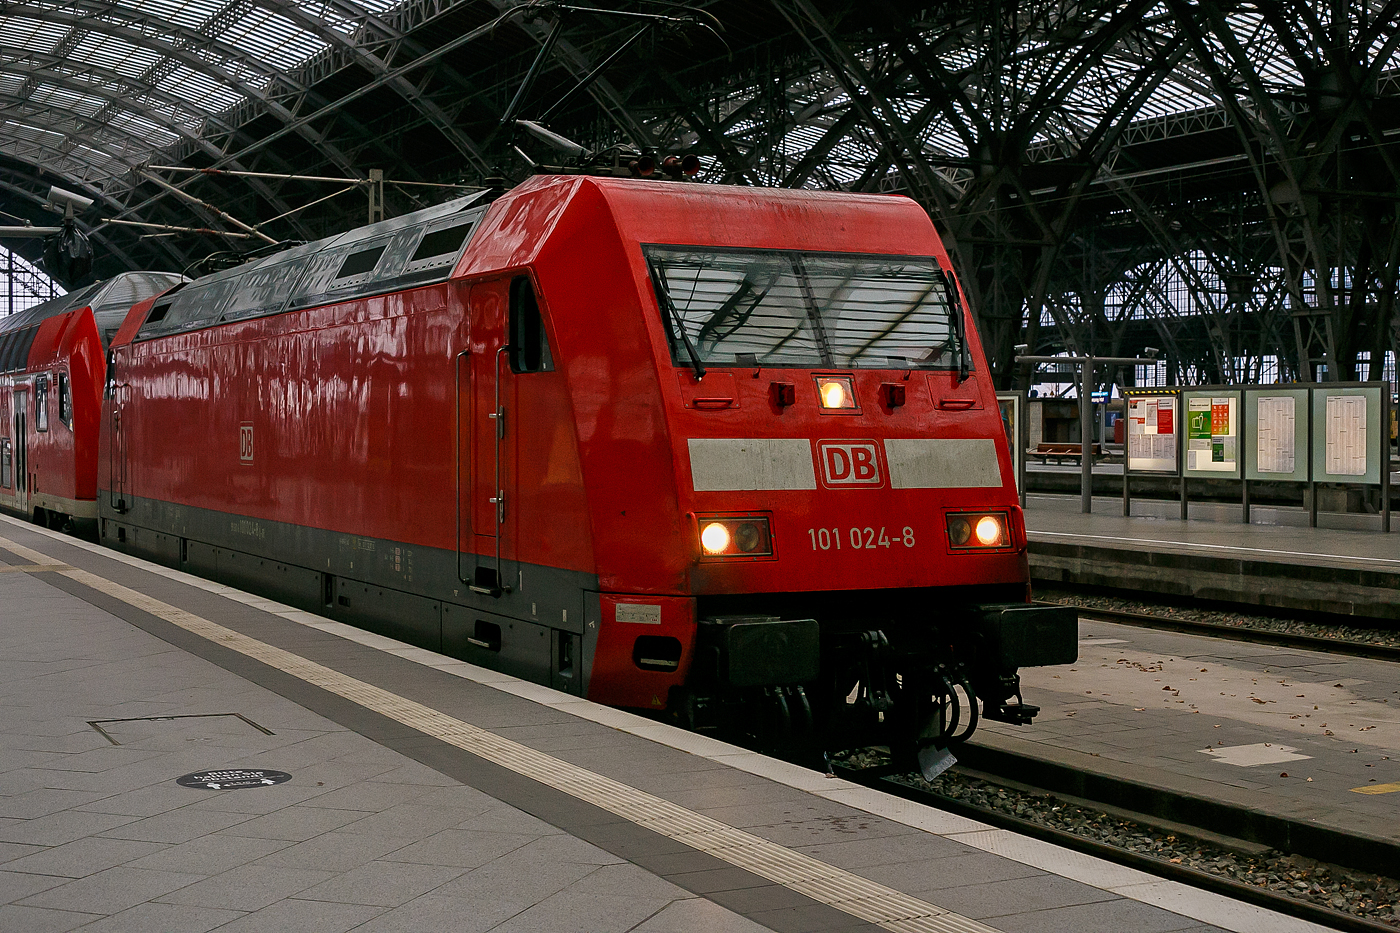 Die 101 024-8 (91 80 6101 024-8 D-DB) der DB Fernverkehr AG fährt am 06.12.2022 mit einem Doppelstockzug der DB Regio in den Hauptbahnhof Leipzig ein.

Die Lok wurde 1996 von ABB Daimler-Benz Transportation GmbH (ADtranz) in Kassel unter der Fabriknummer 33134 gebaut.
